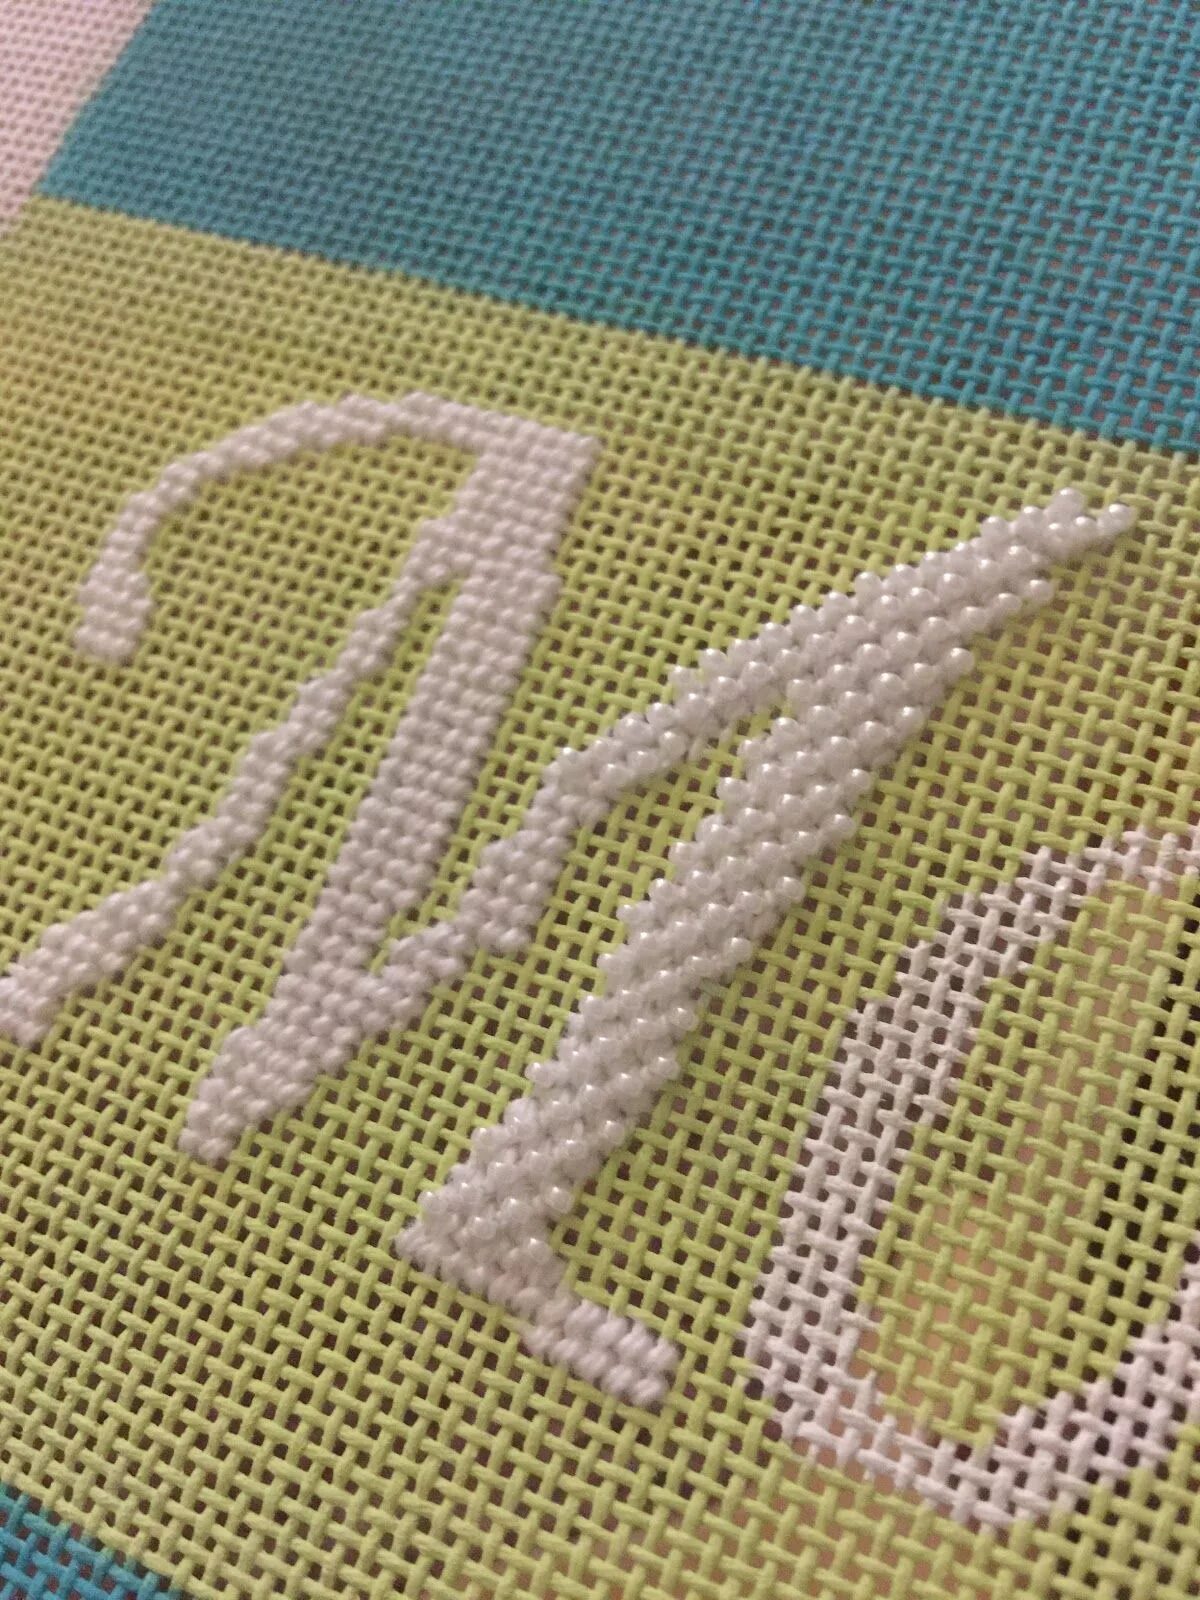 Техника вышивания букв. Вышивка инициалов. Вышивка гладью буквы. Вышитые буквы на вязаном изделии. Ручная вышивка букв.